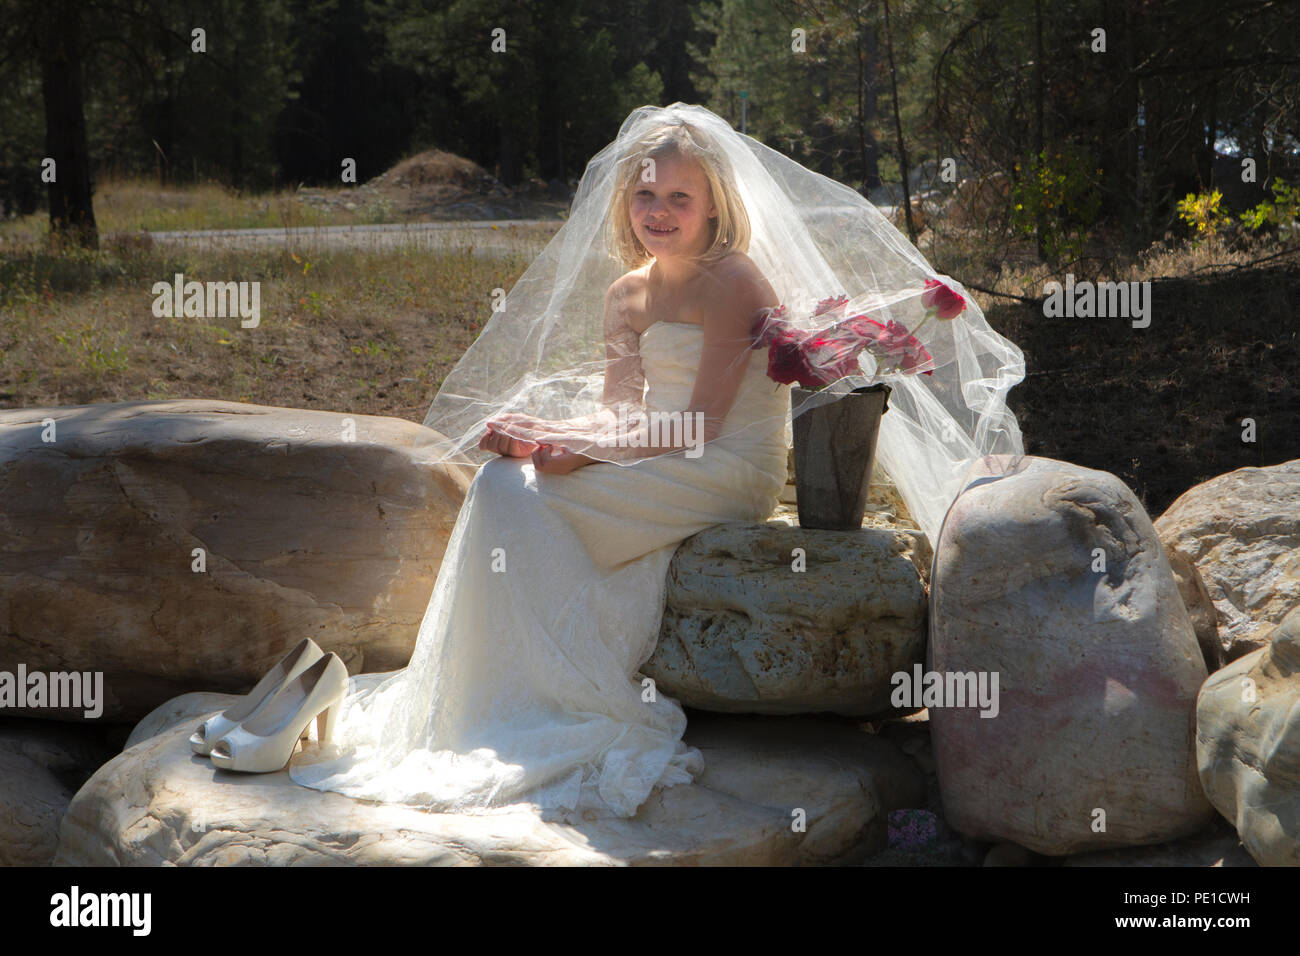 Fantasia, 8-9 anno attractie bionda, indossando zia di abito da sposa & velo. Seduti all'aperto sulla grande roccia accanto al vaso di rose rosse. Foto Stock